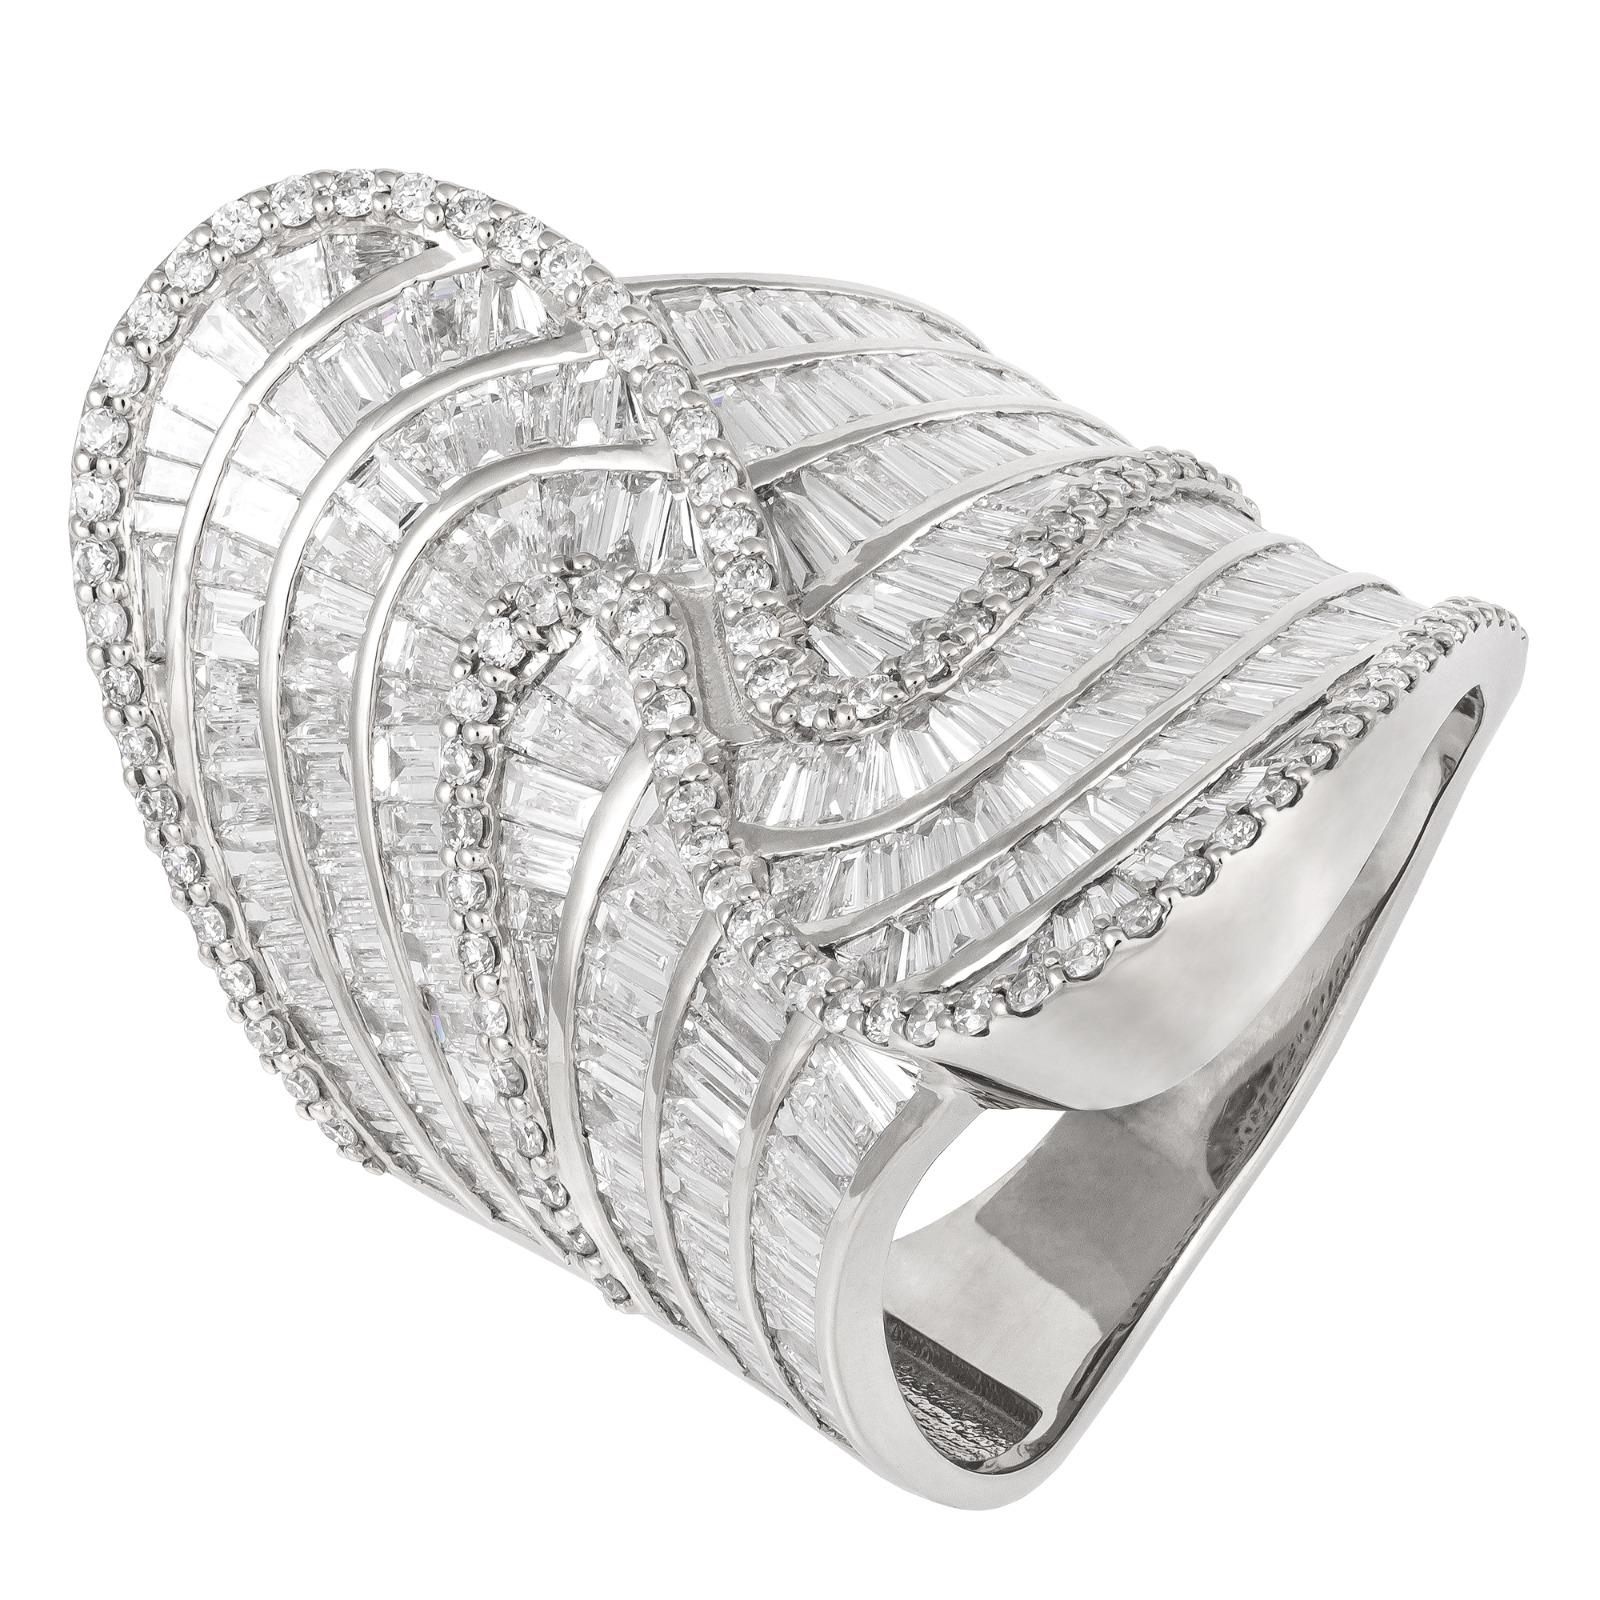 For Sale:  Stunning White 18K Gold White Diamond Ring for Her 4